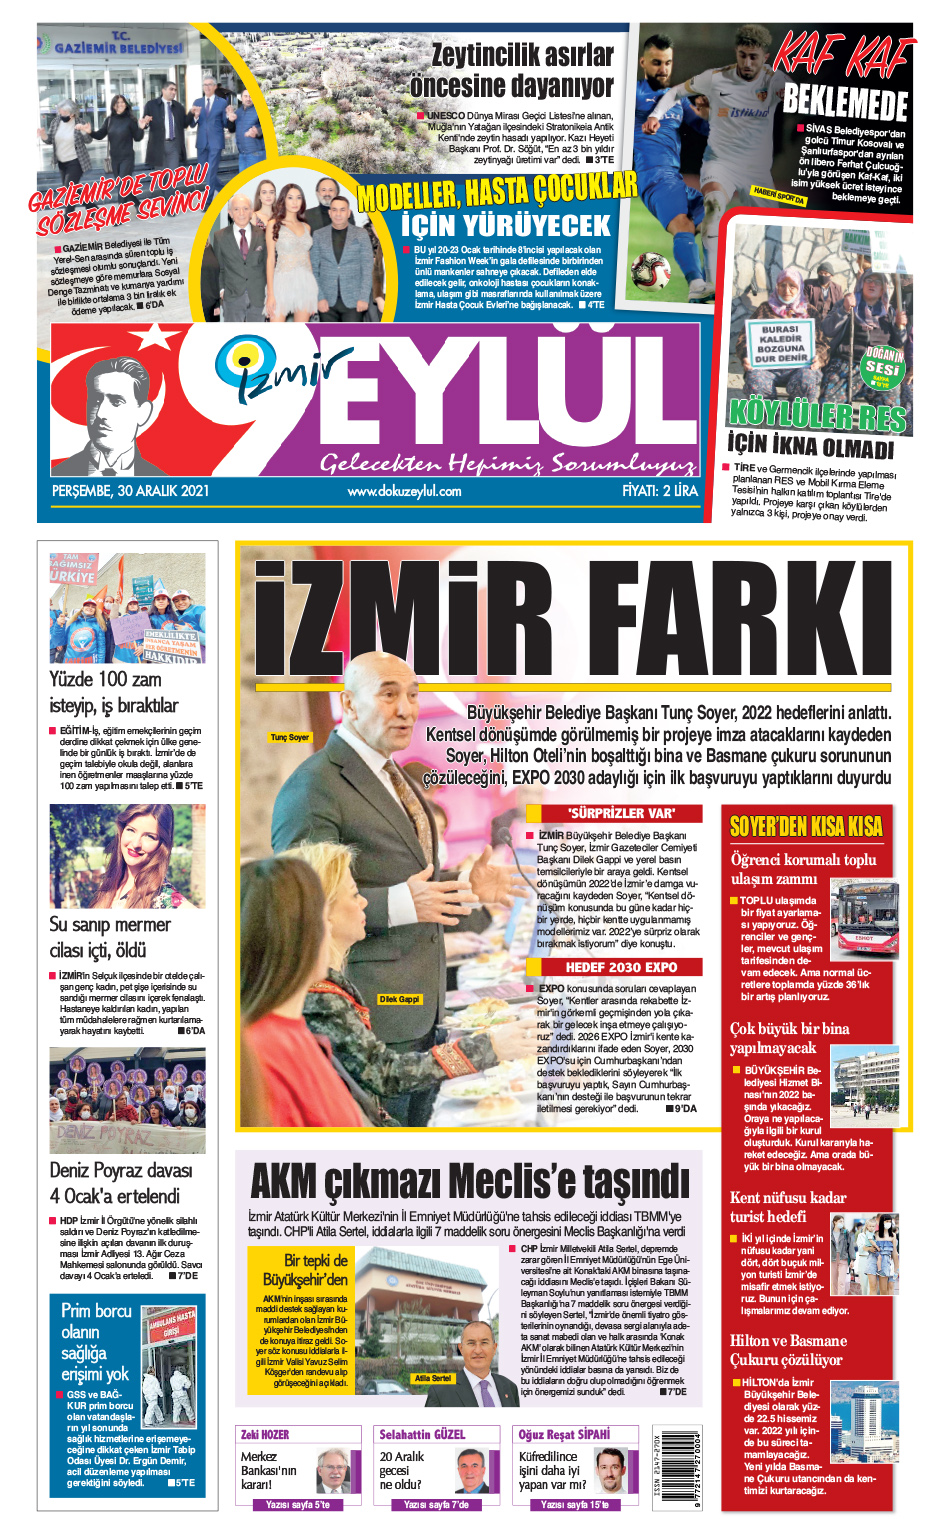 Dokuz Eylül Gazetesi | İzmir, Türkiye, Dünya'dan Güncel Haberler - 30.12.2021 Manşeti